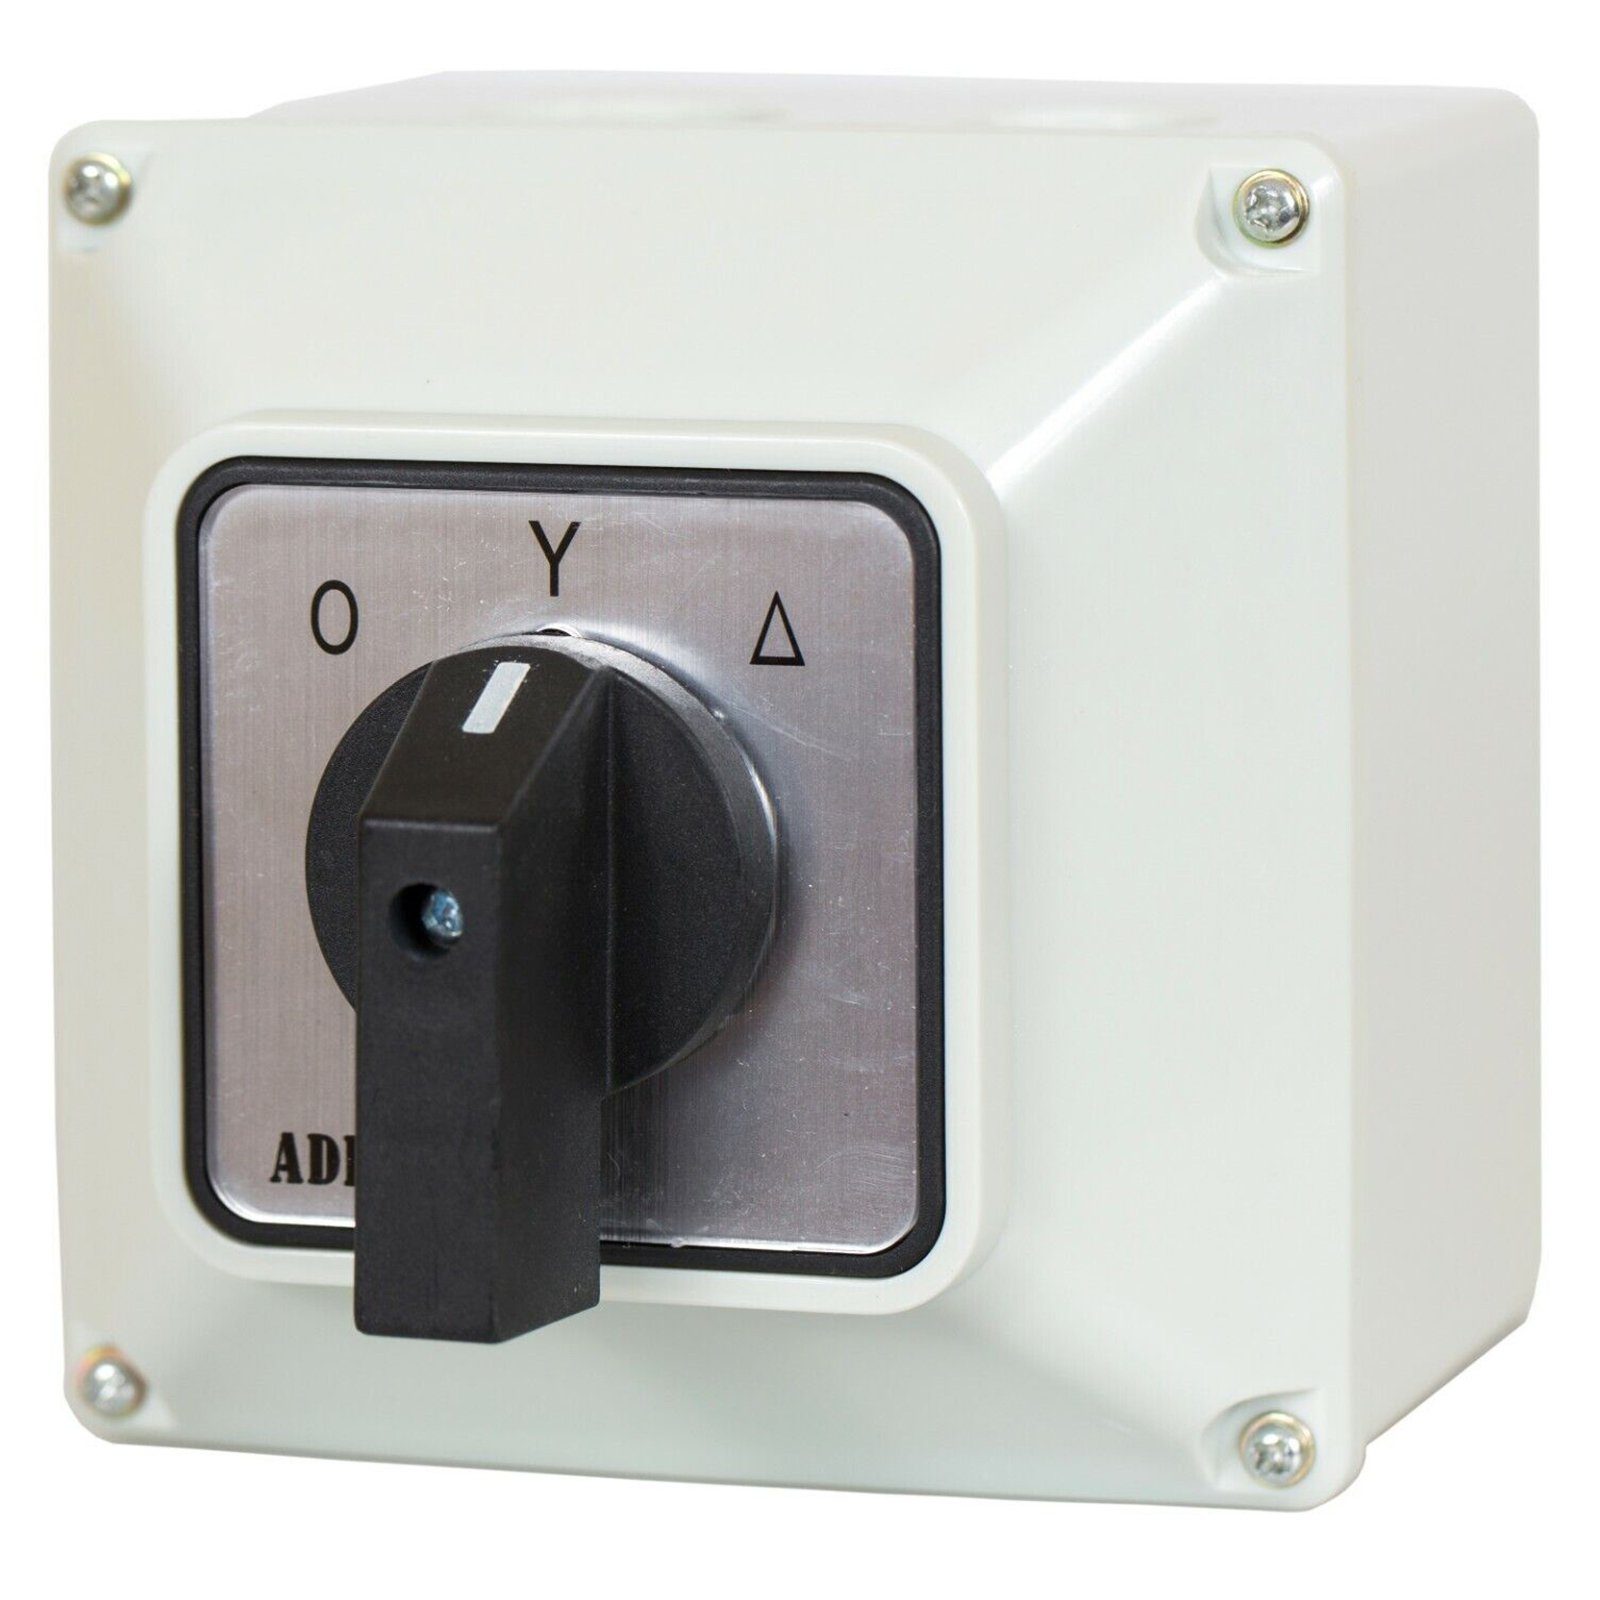 ADELID Schalter, Universal-Nockenschalter 0-Y-T Drehschalter im Gehäuse 16A 230/400V 3 Phase 3 Positionen IP65